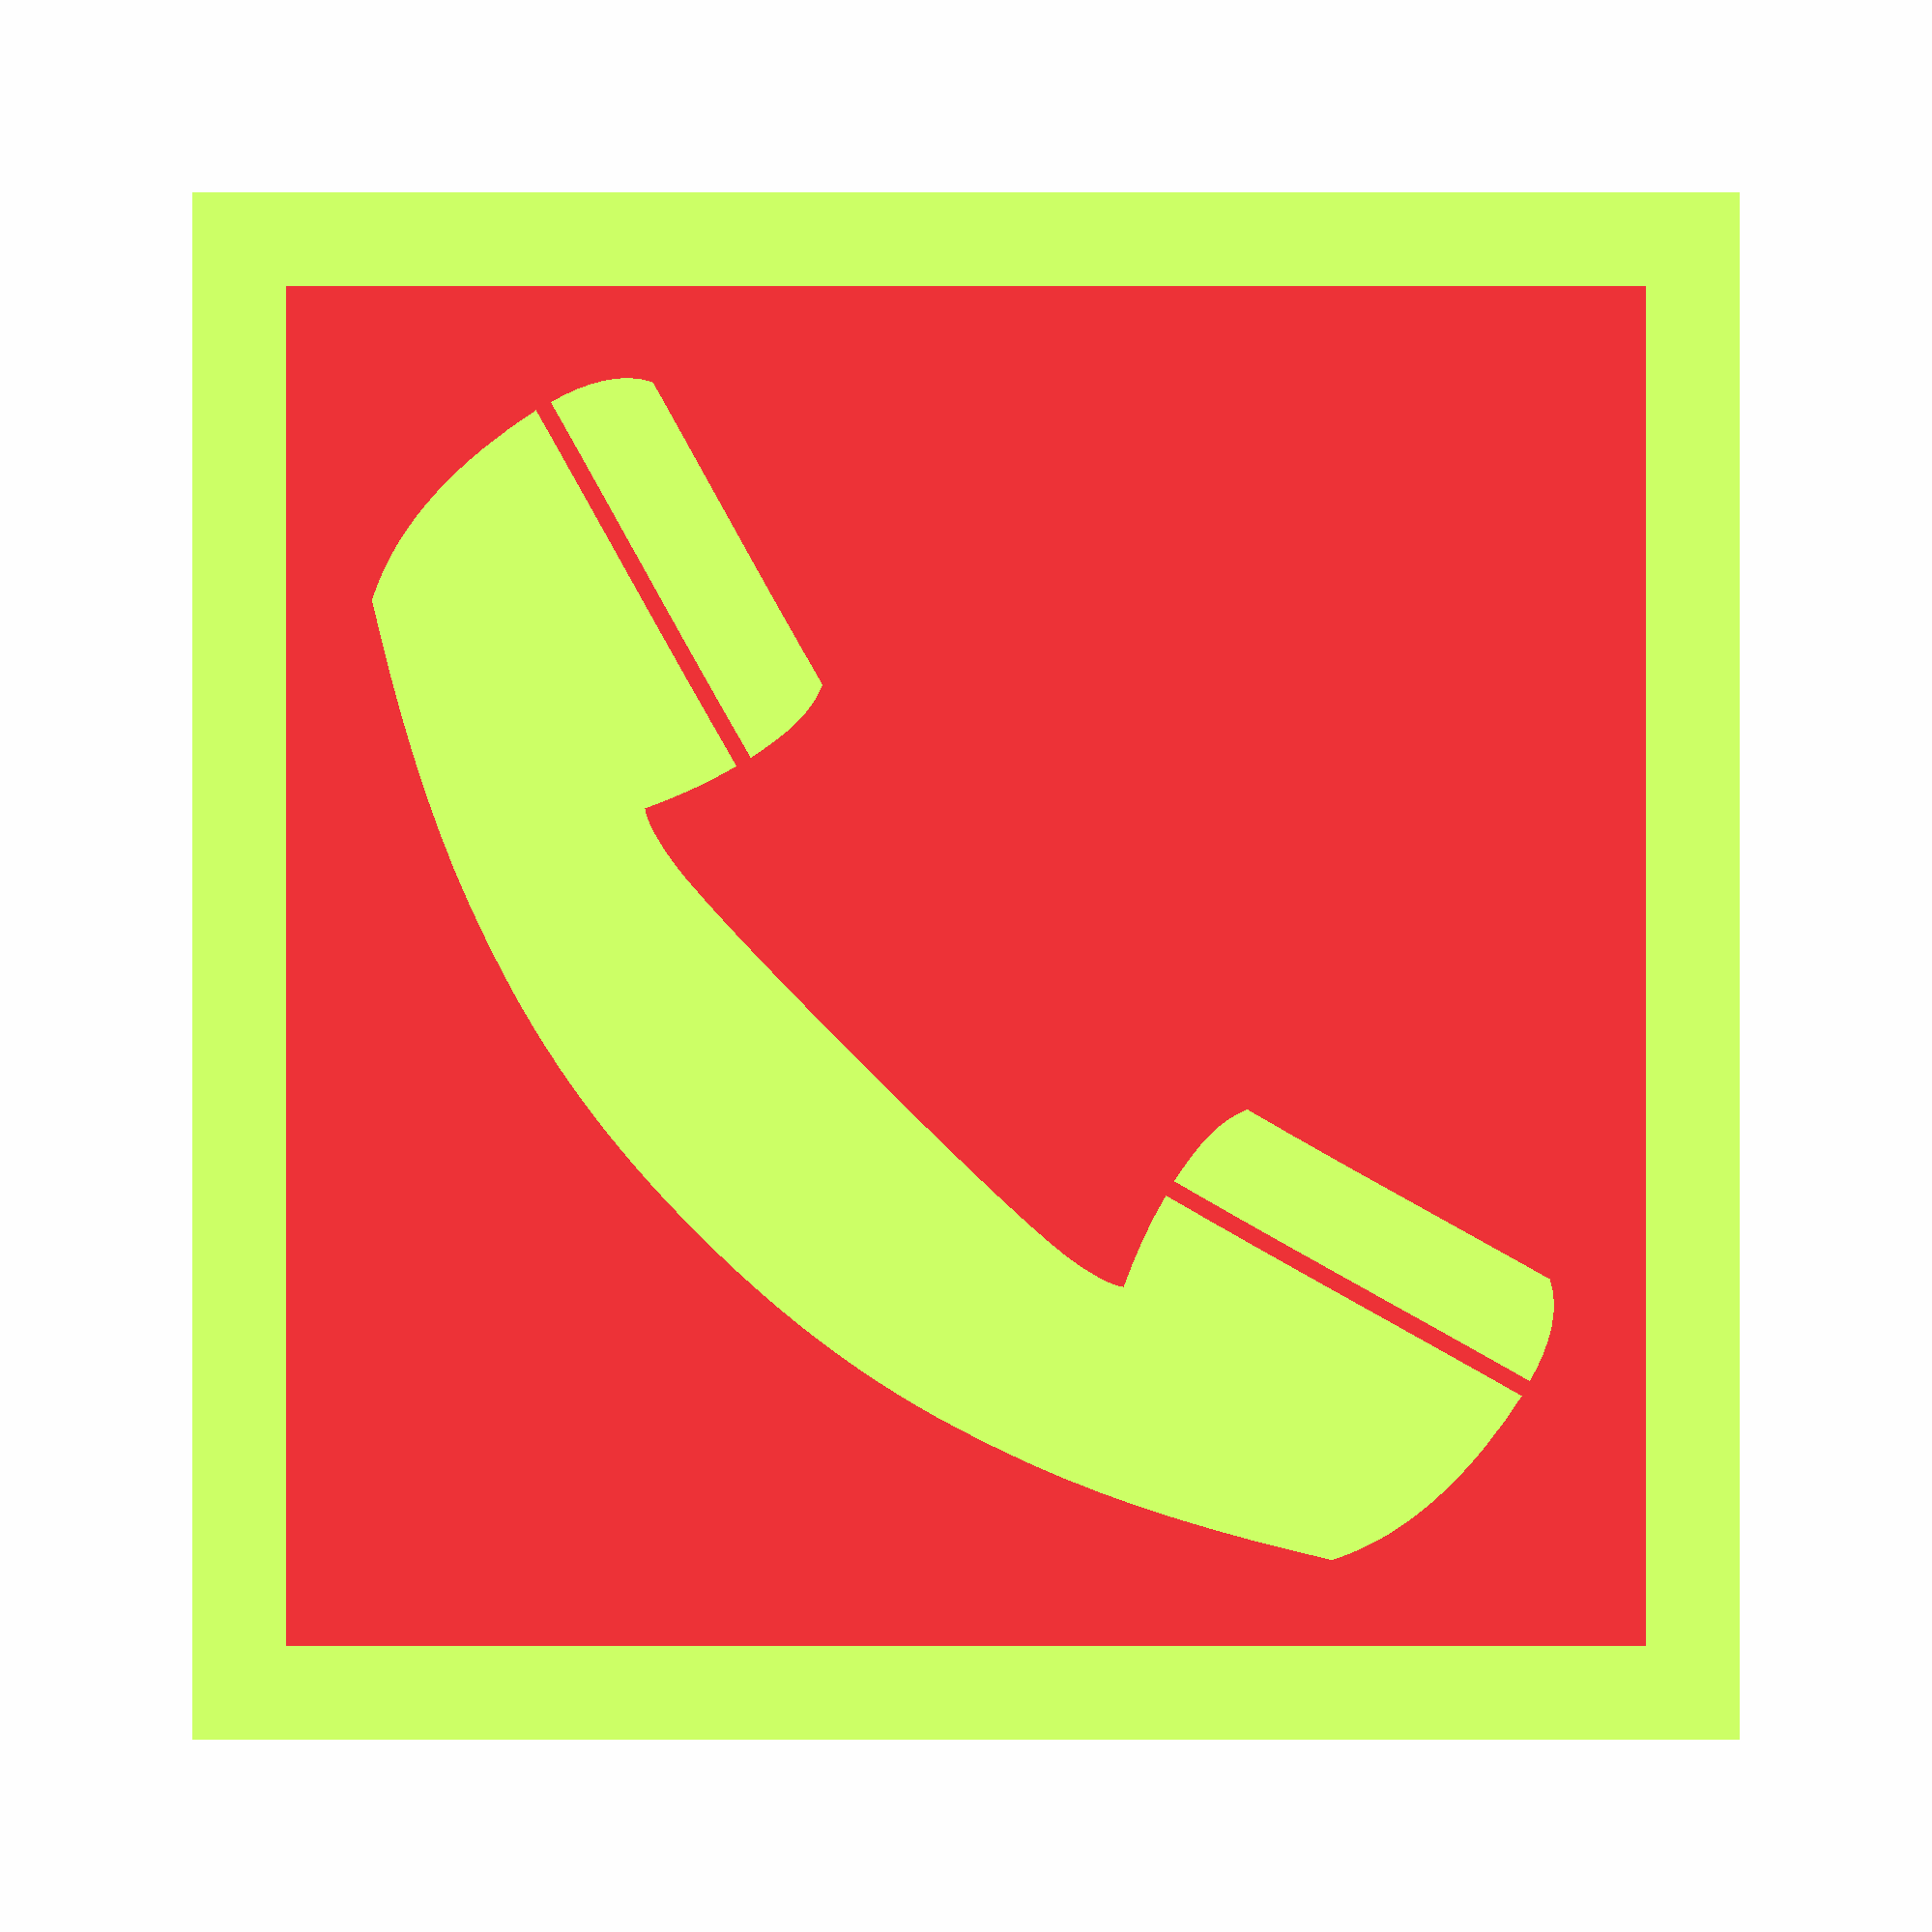 E04 - Telefone ou interfone de emergência